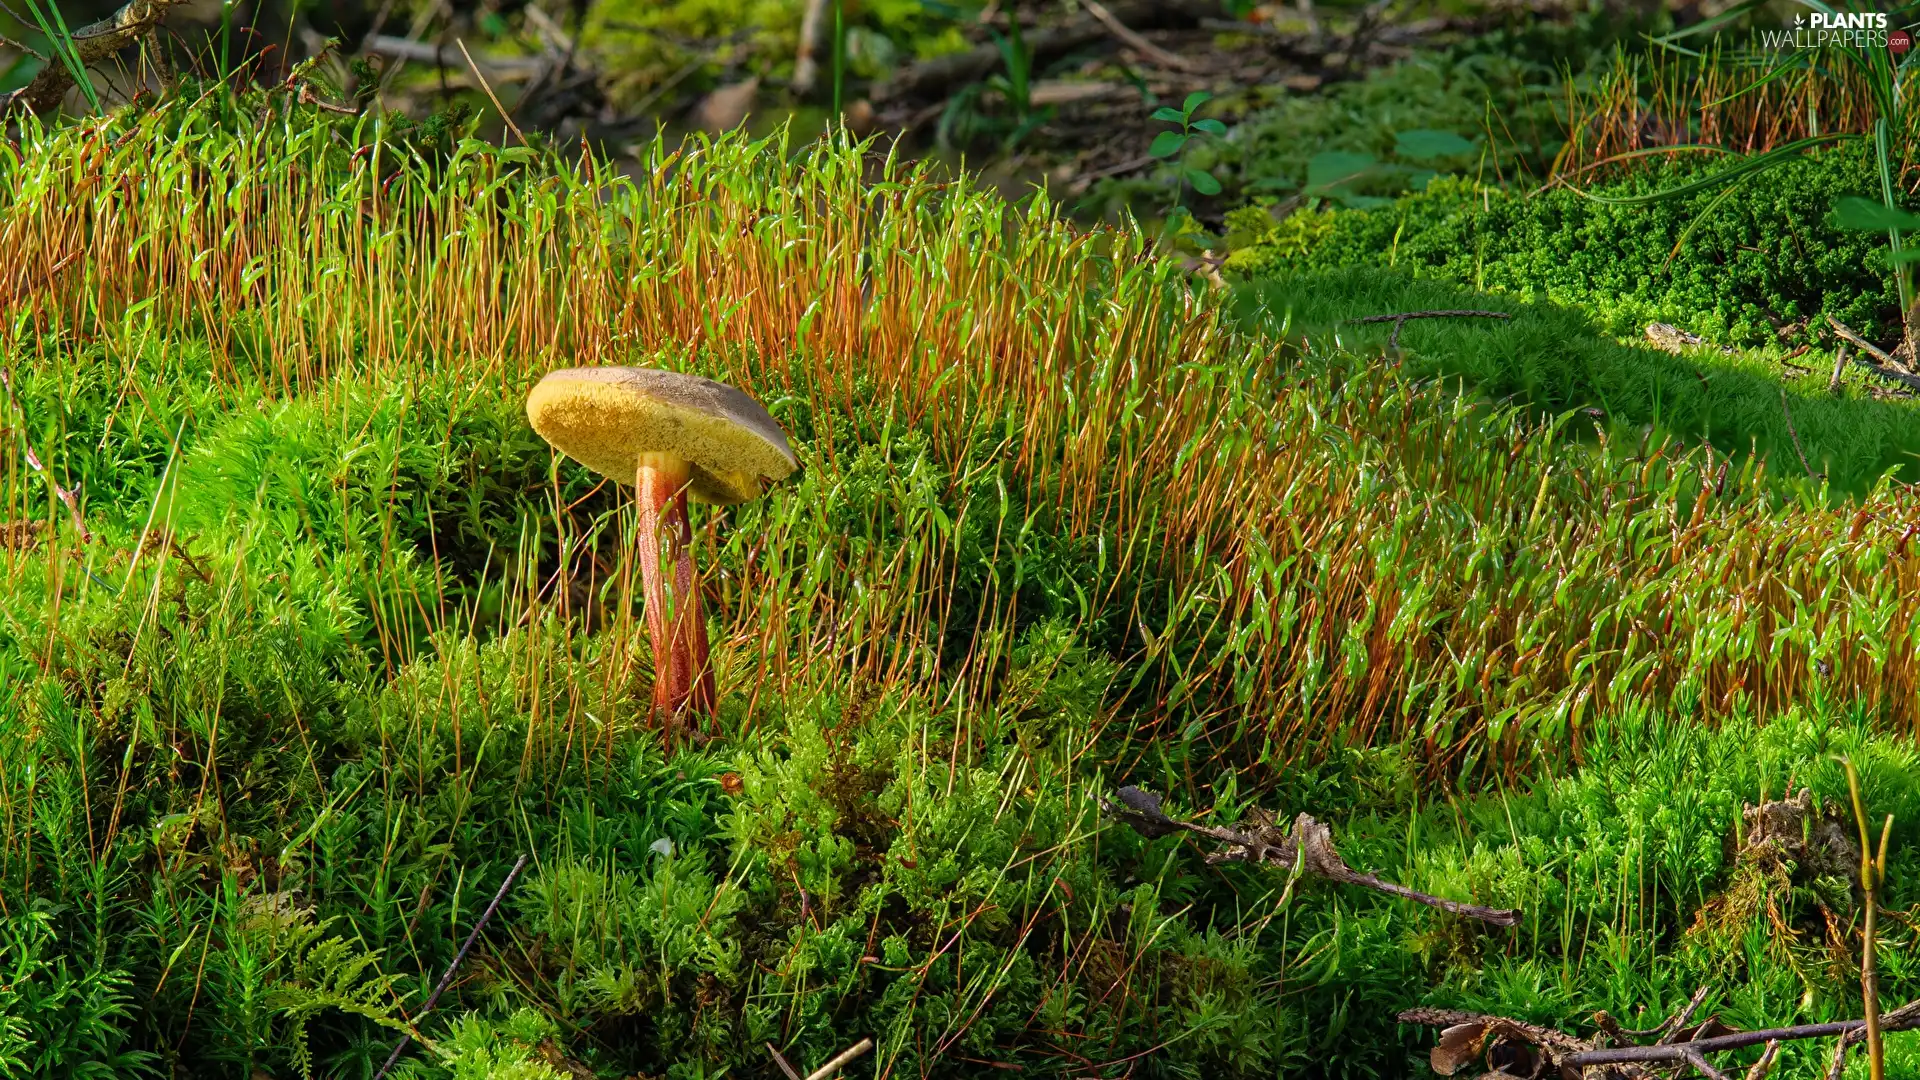 Moss, Mushrooms, grass